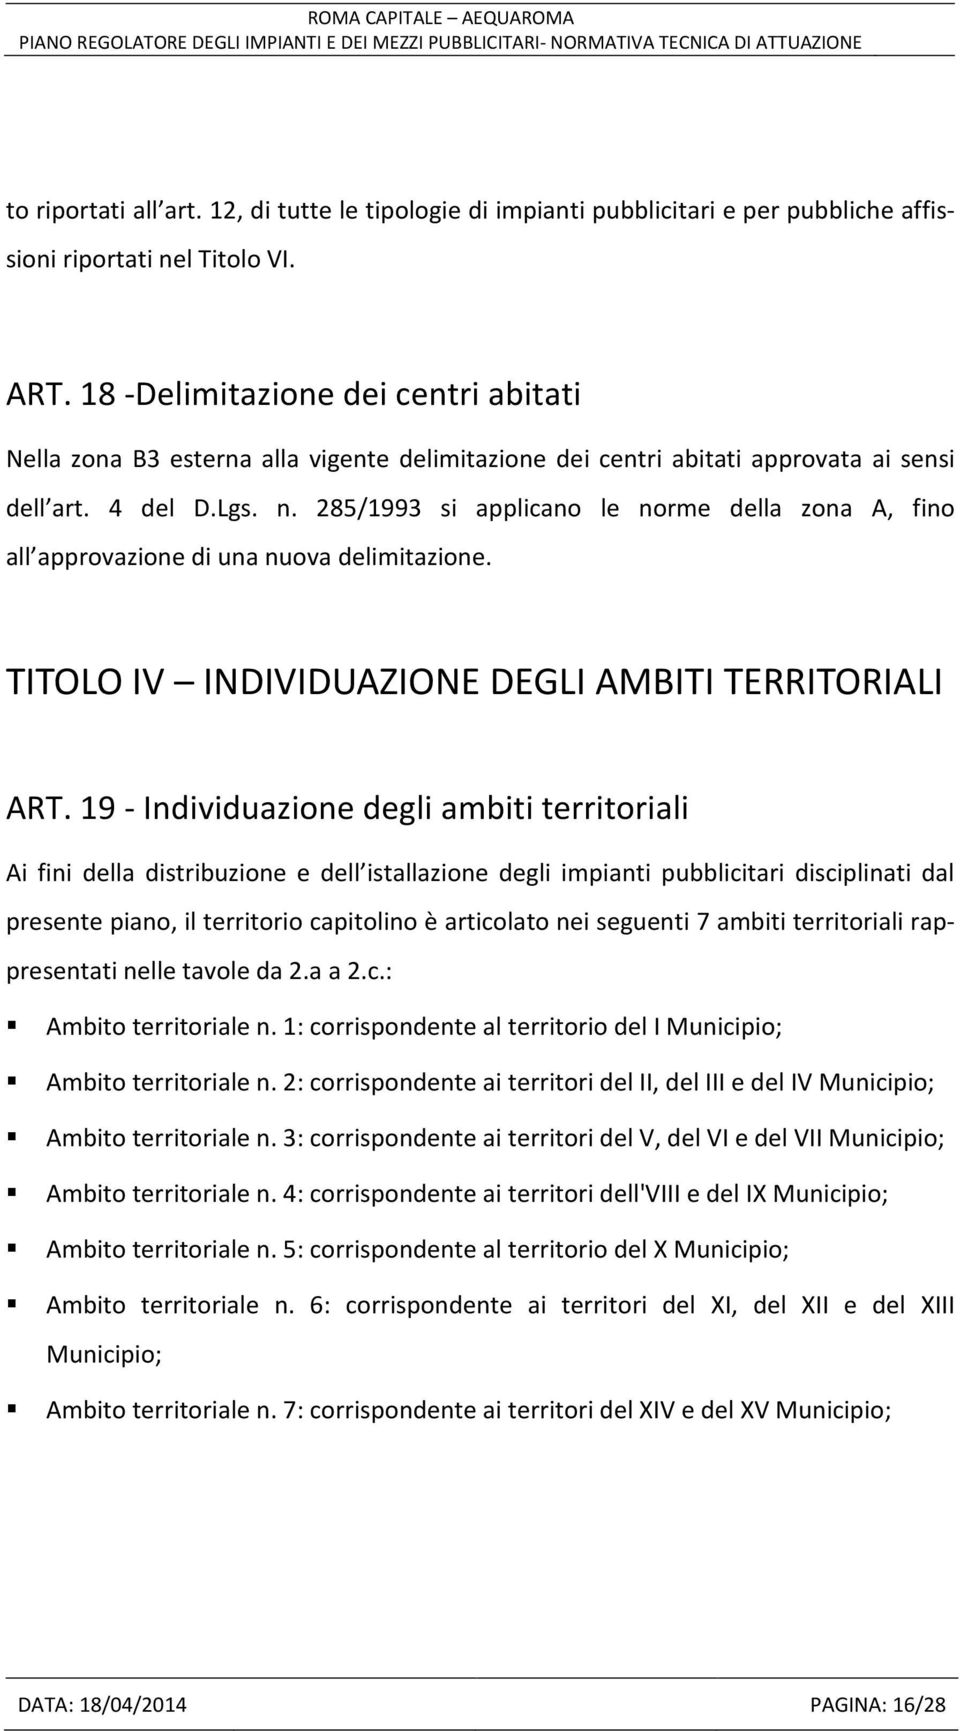 285/1993 si applicano le norme della zona A, fino all approvazione di una nuova delimitazione. TITOLO IV INDIVIDUAZIONE DEGLI AMBITI TERRITORIALI ART.